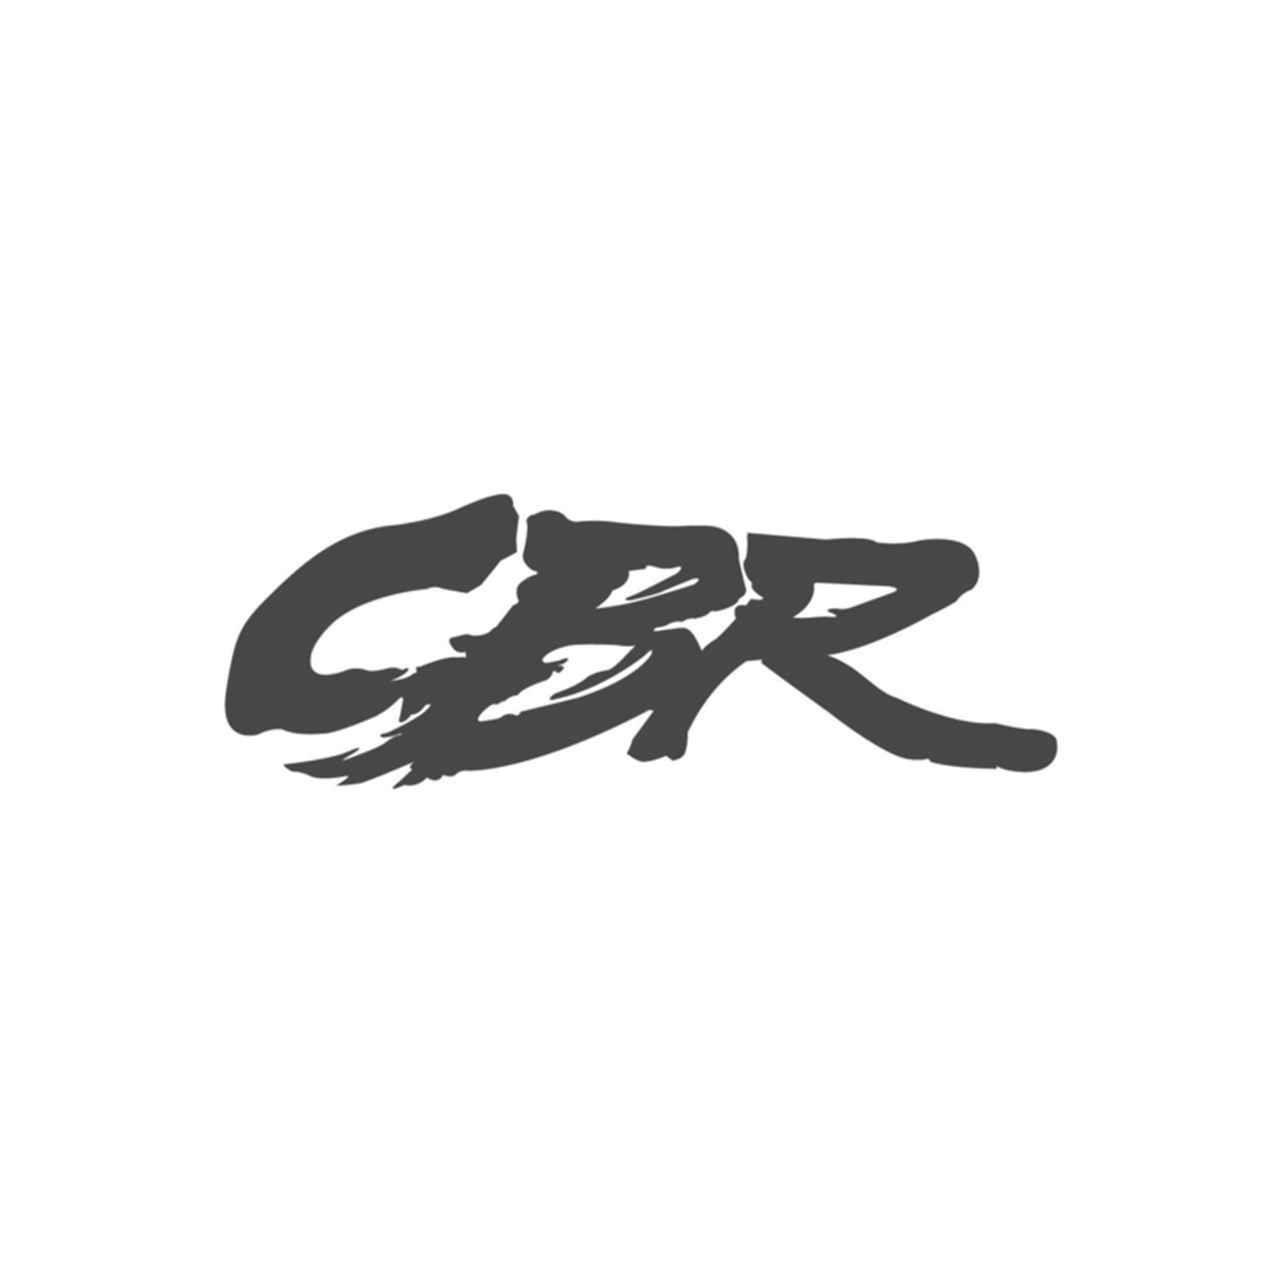 CBR Logo - Honda Cbr Logo Vinyl Decal Sticker. Aftermarket Decals. Vinyl